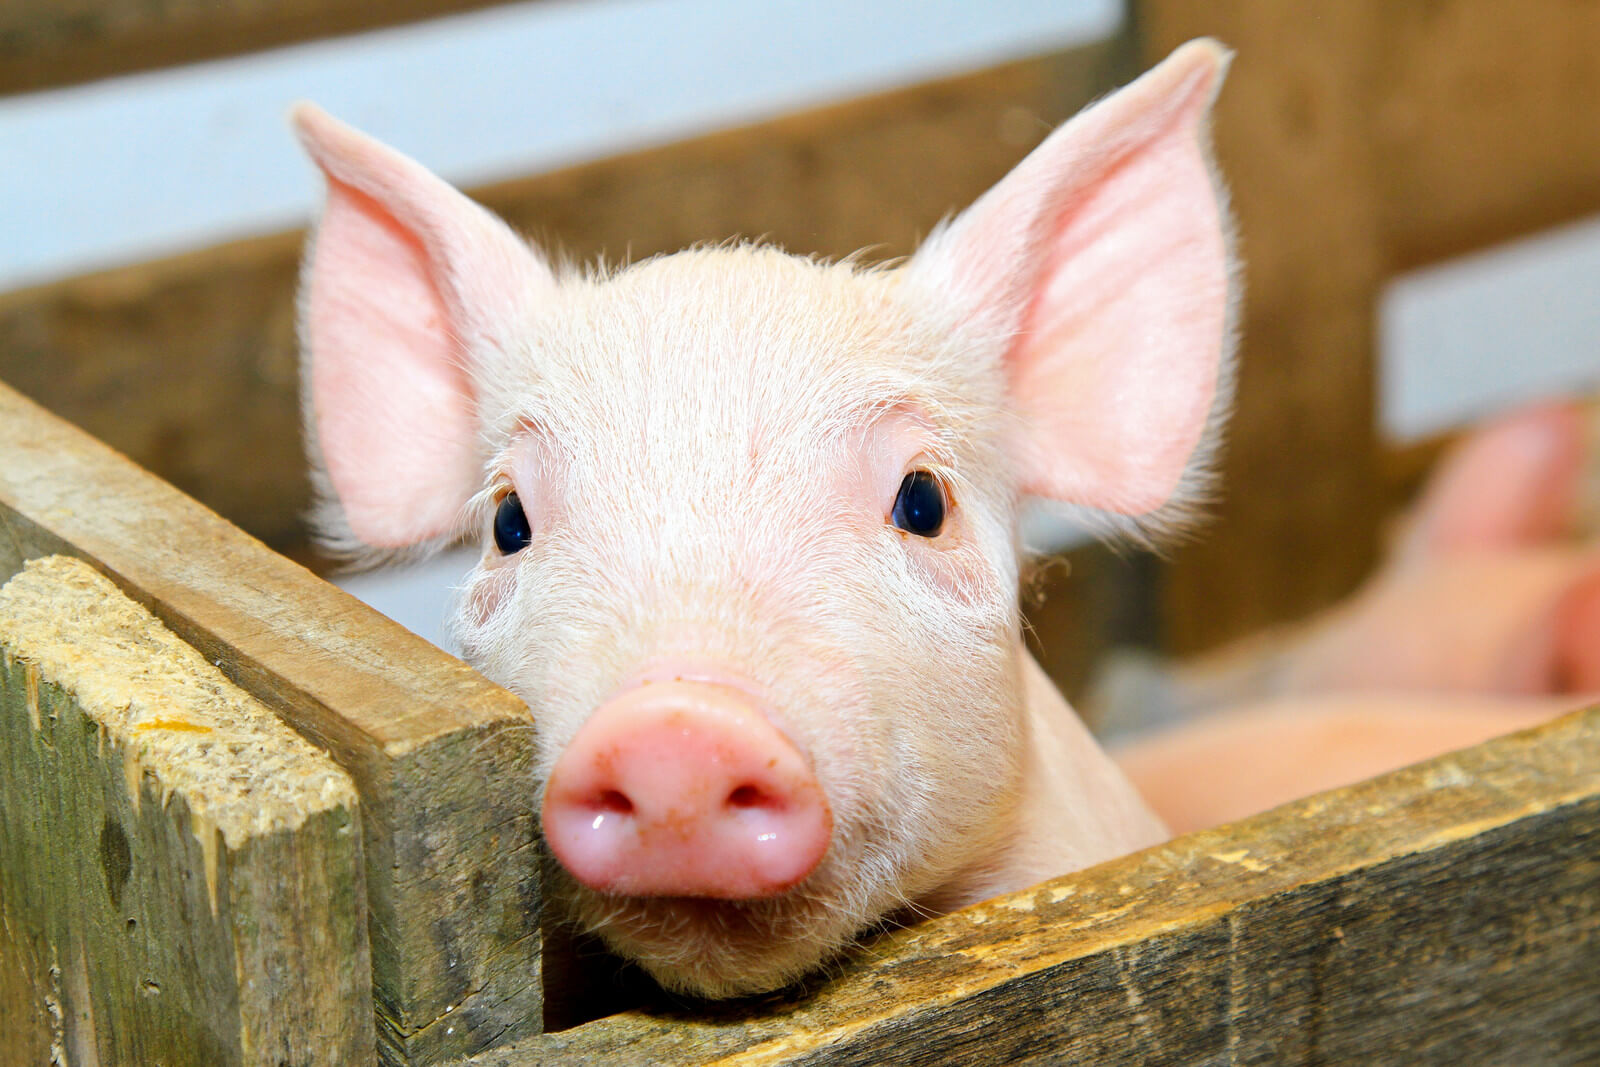 7 - Baby Pig Closeup